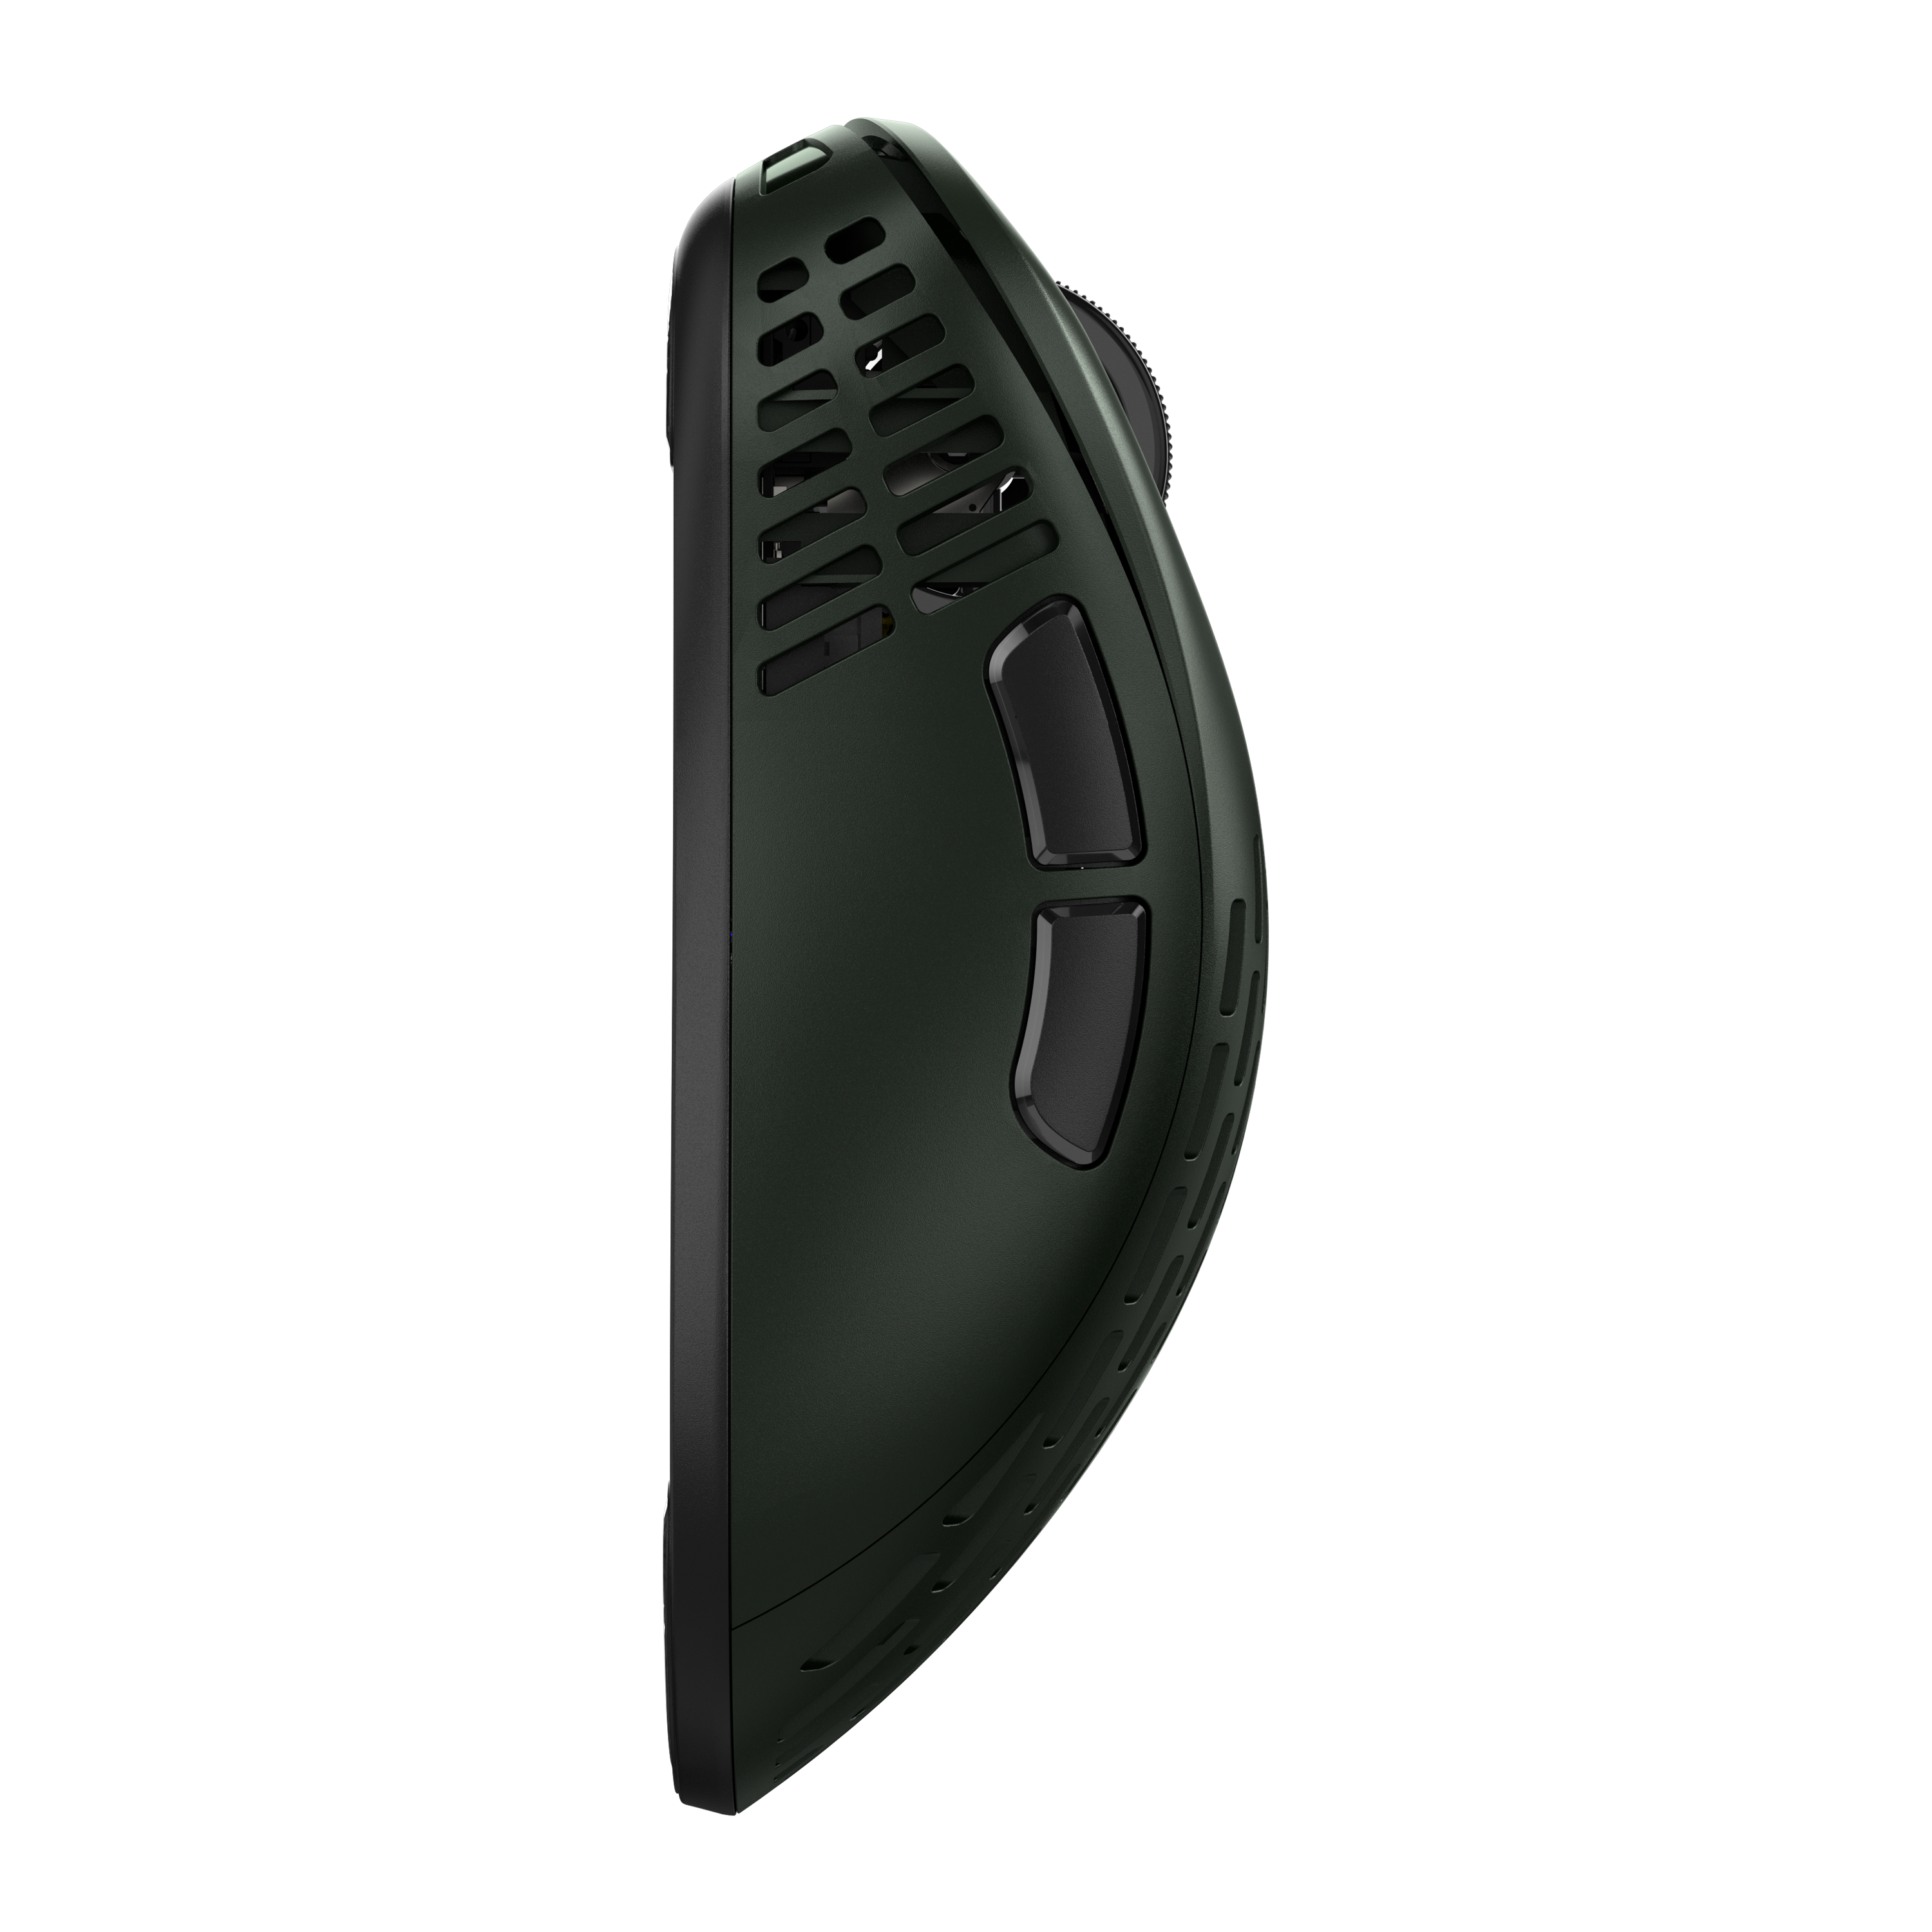 Chuột không dây siêu nhẹ Pulsar Xlite Wireless V2 Mini - Founder's Edition - Hàng chính hãng